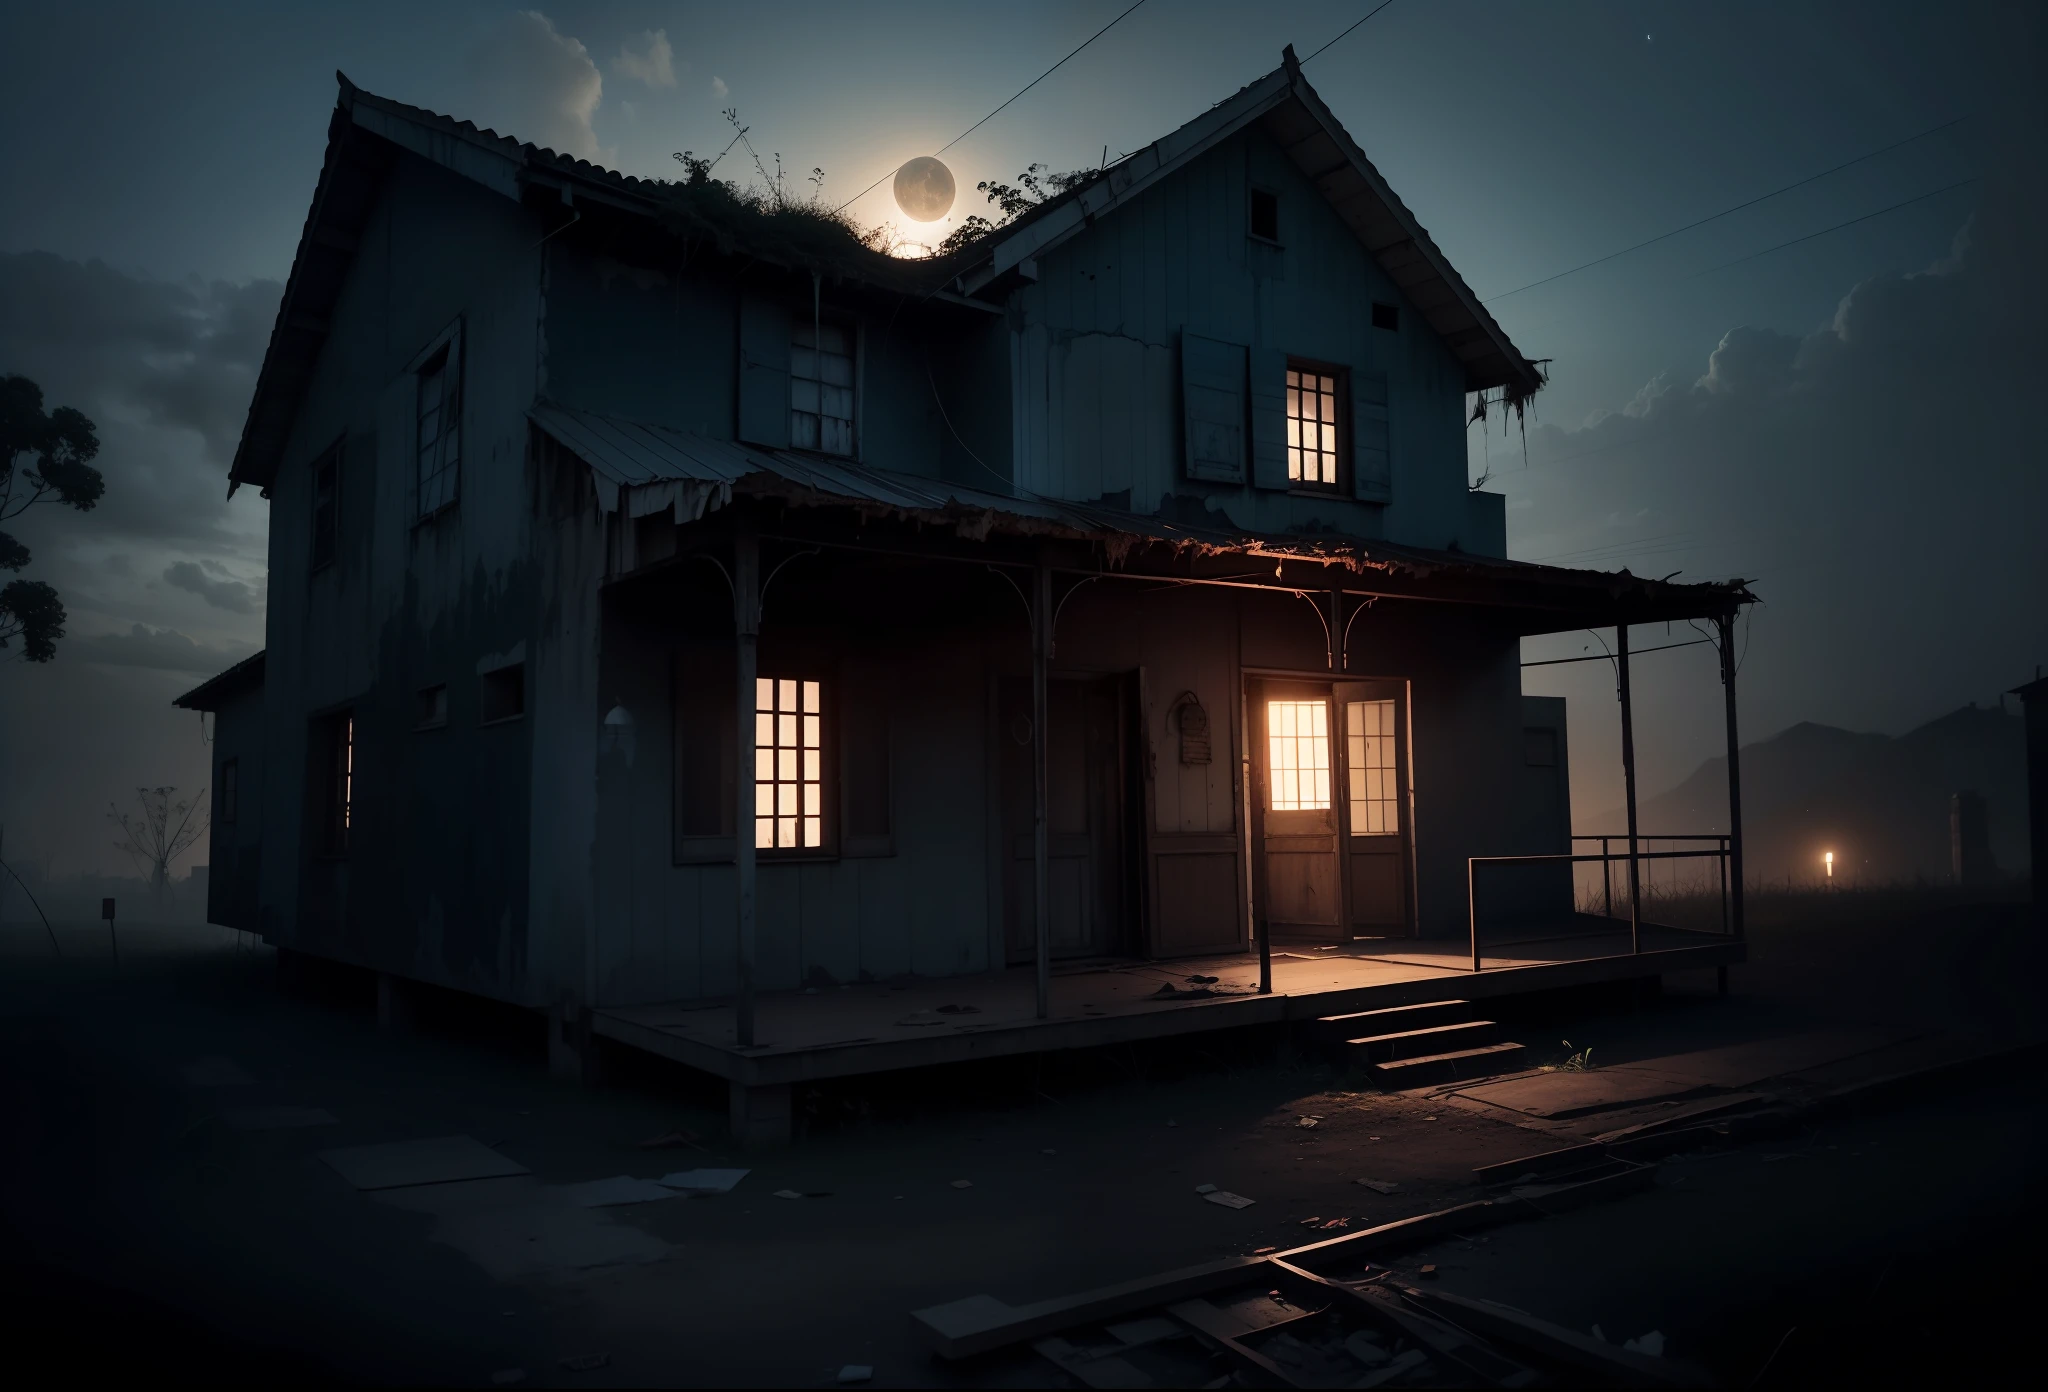 Casa vieja y abandonada, aterrador, horror, Noche oscura, atmósfera oscura, 8K, máximo detallado, alta calidad